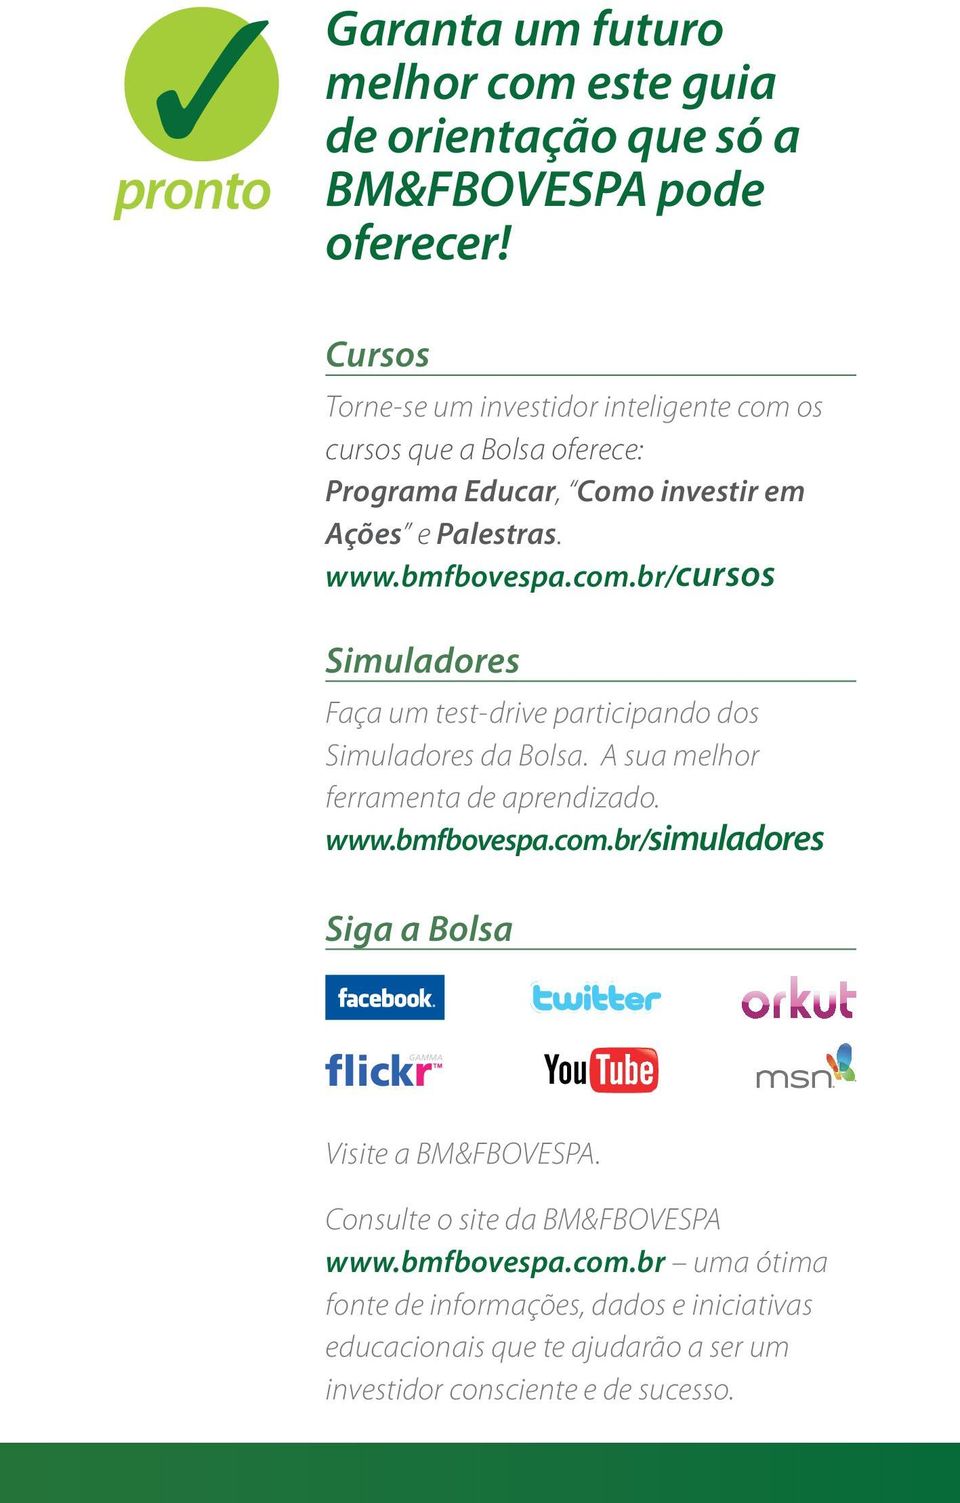 A sua melhor ferramenta de aprendizado. www.bmfbovespa.com.br/simuladores Siga a Bolsa Visite a BM&FBOVESPA. Consulte o site da BM&FBOVESPA www.